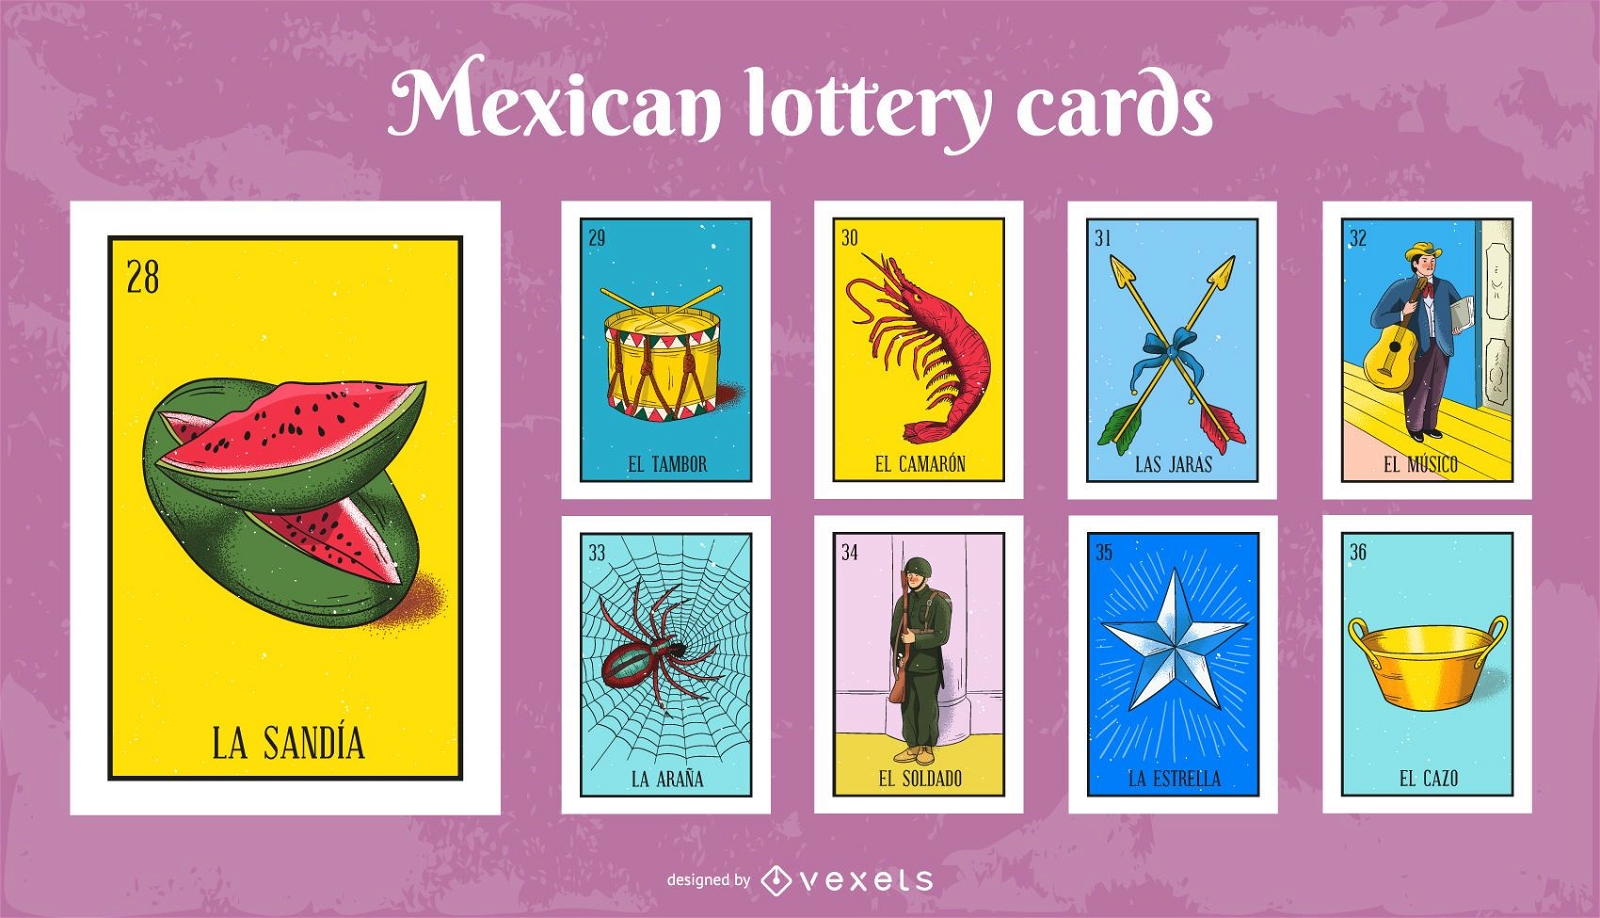 Juego de cartas de loter?a mexicana